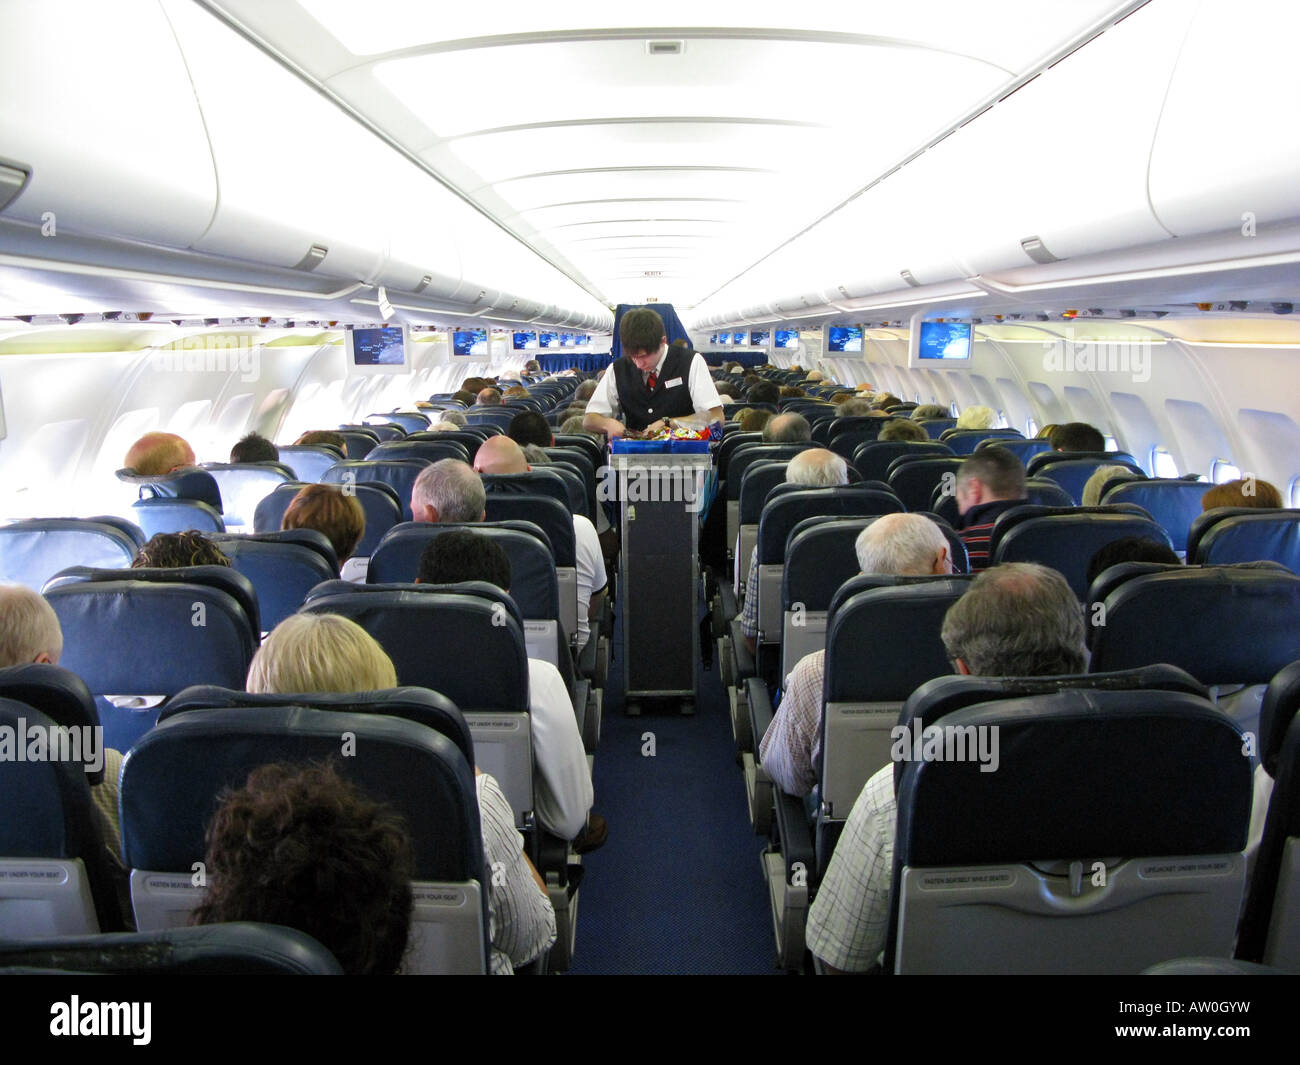 Passengers on a aeroplane Stock Photo